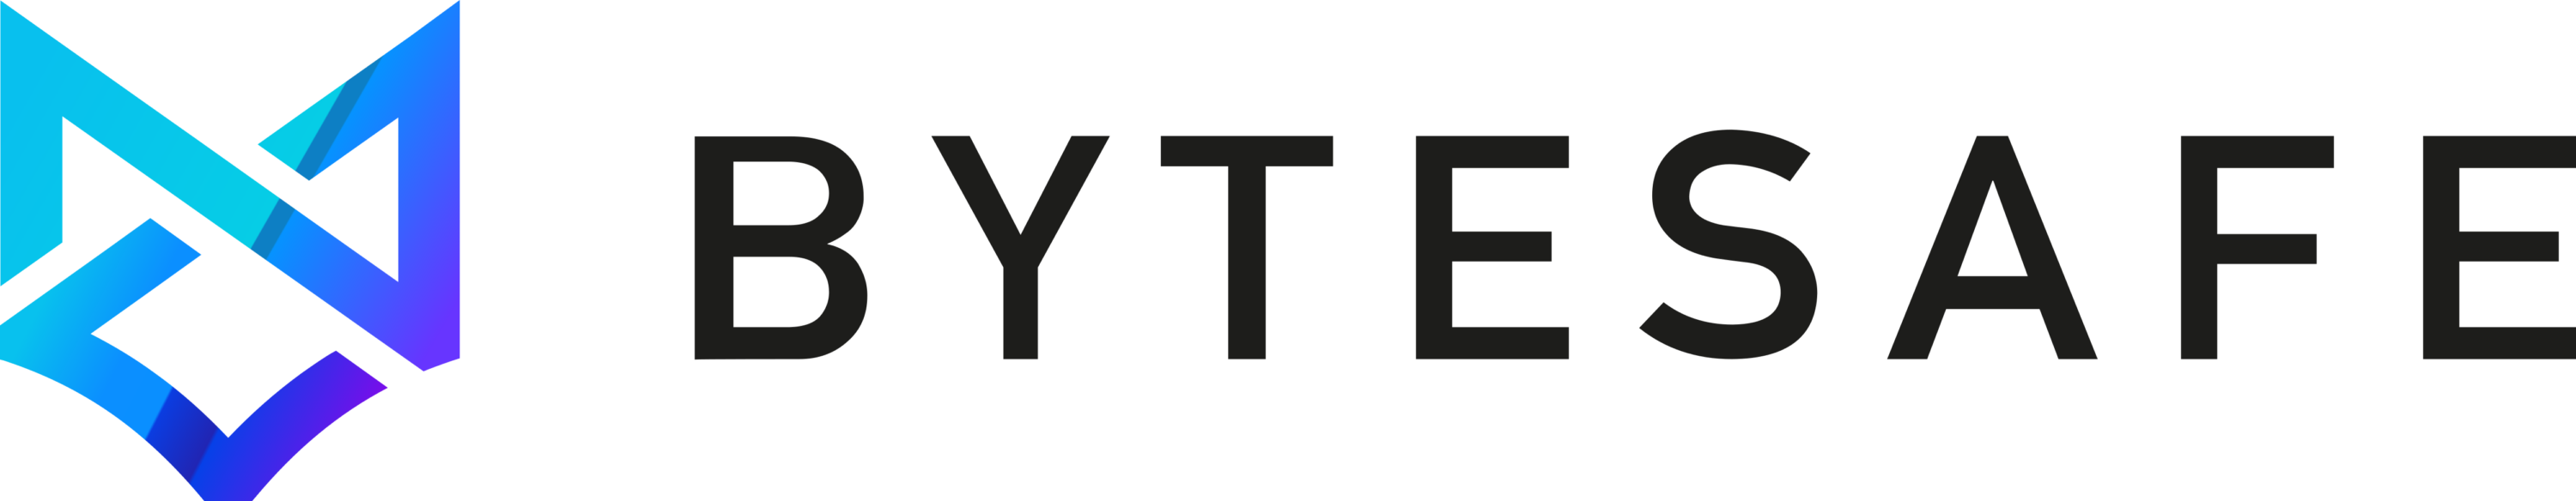 Bytesafe Logo